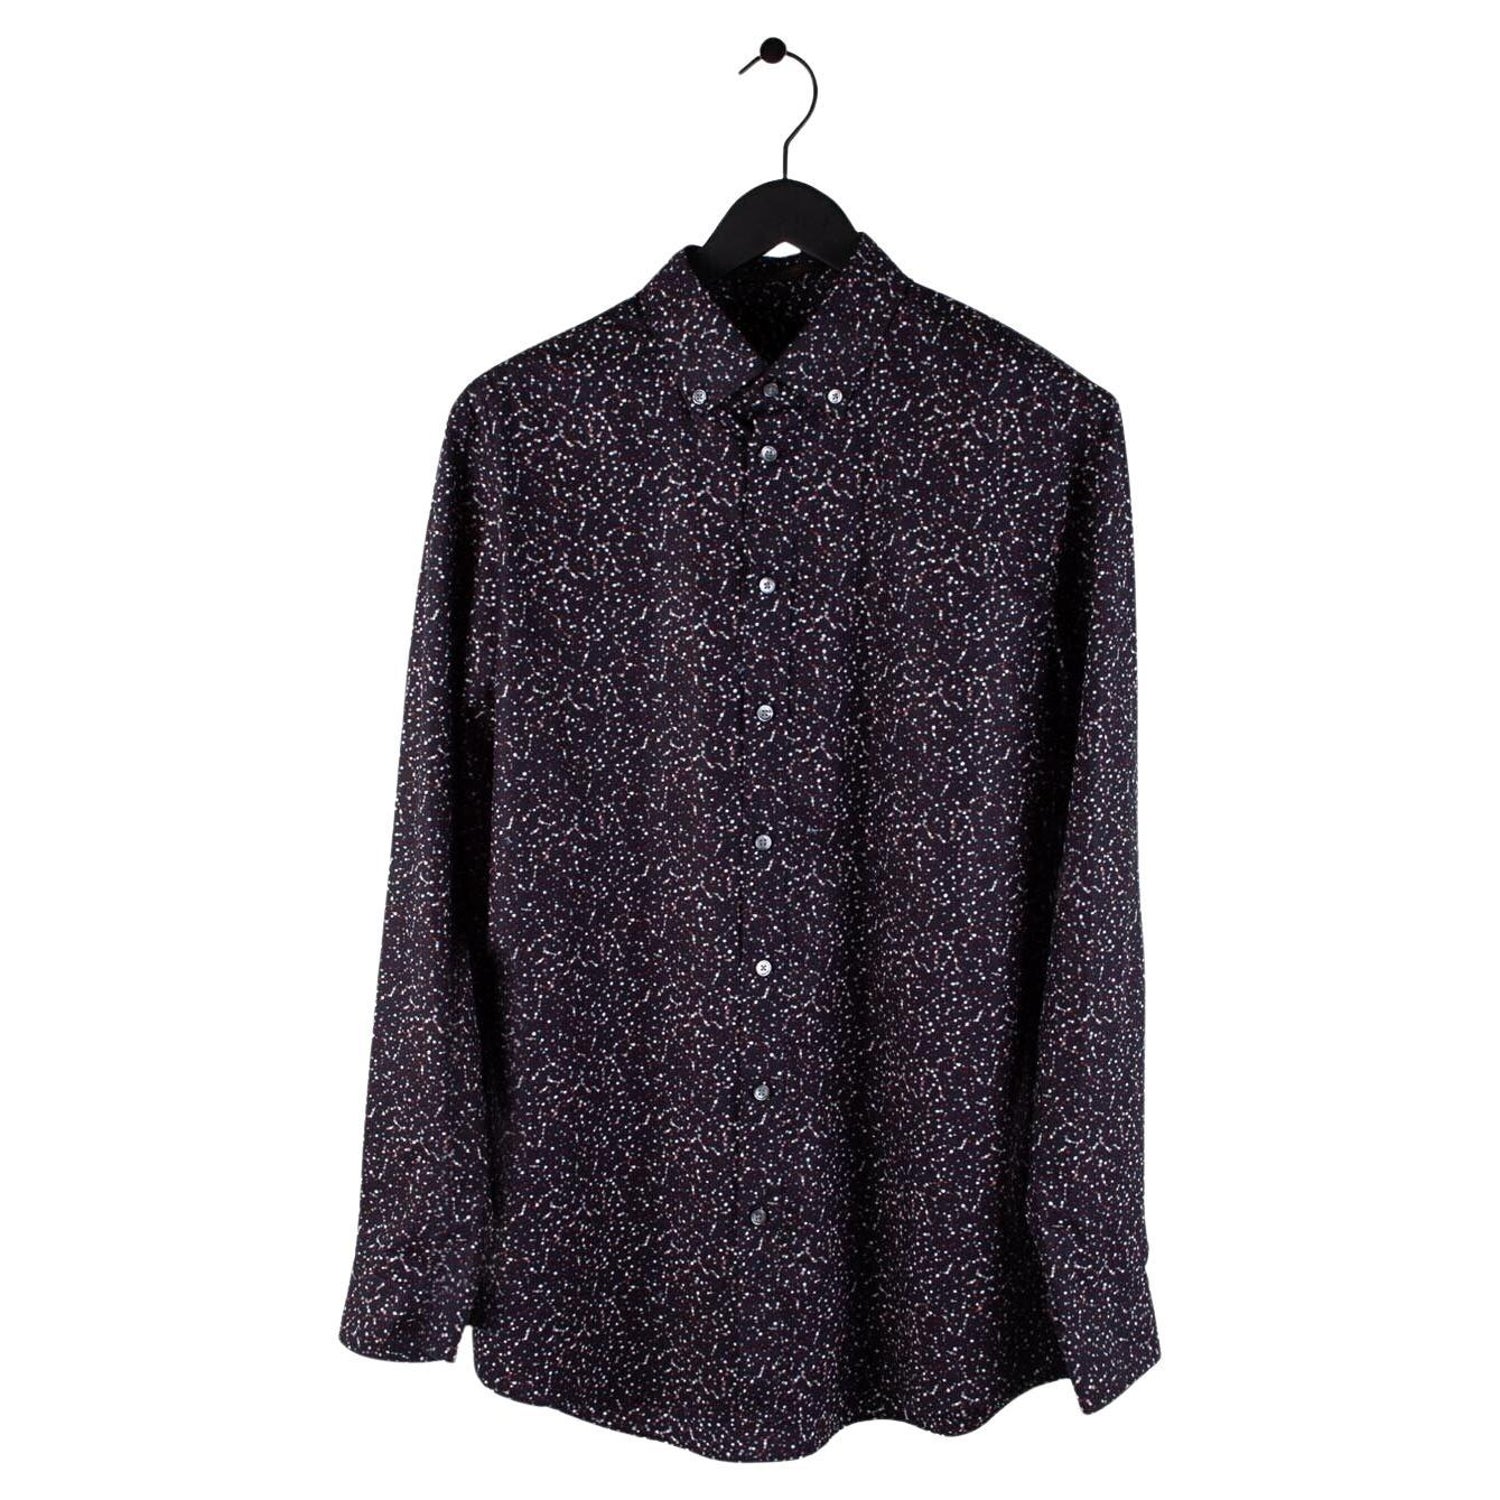 Chemise à Motif - Louis Vuitton Jaune et Violet Pour Homme BK0096 - Sodishop